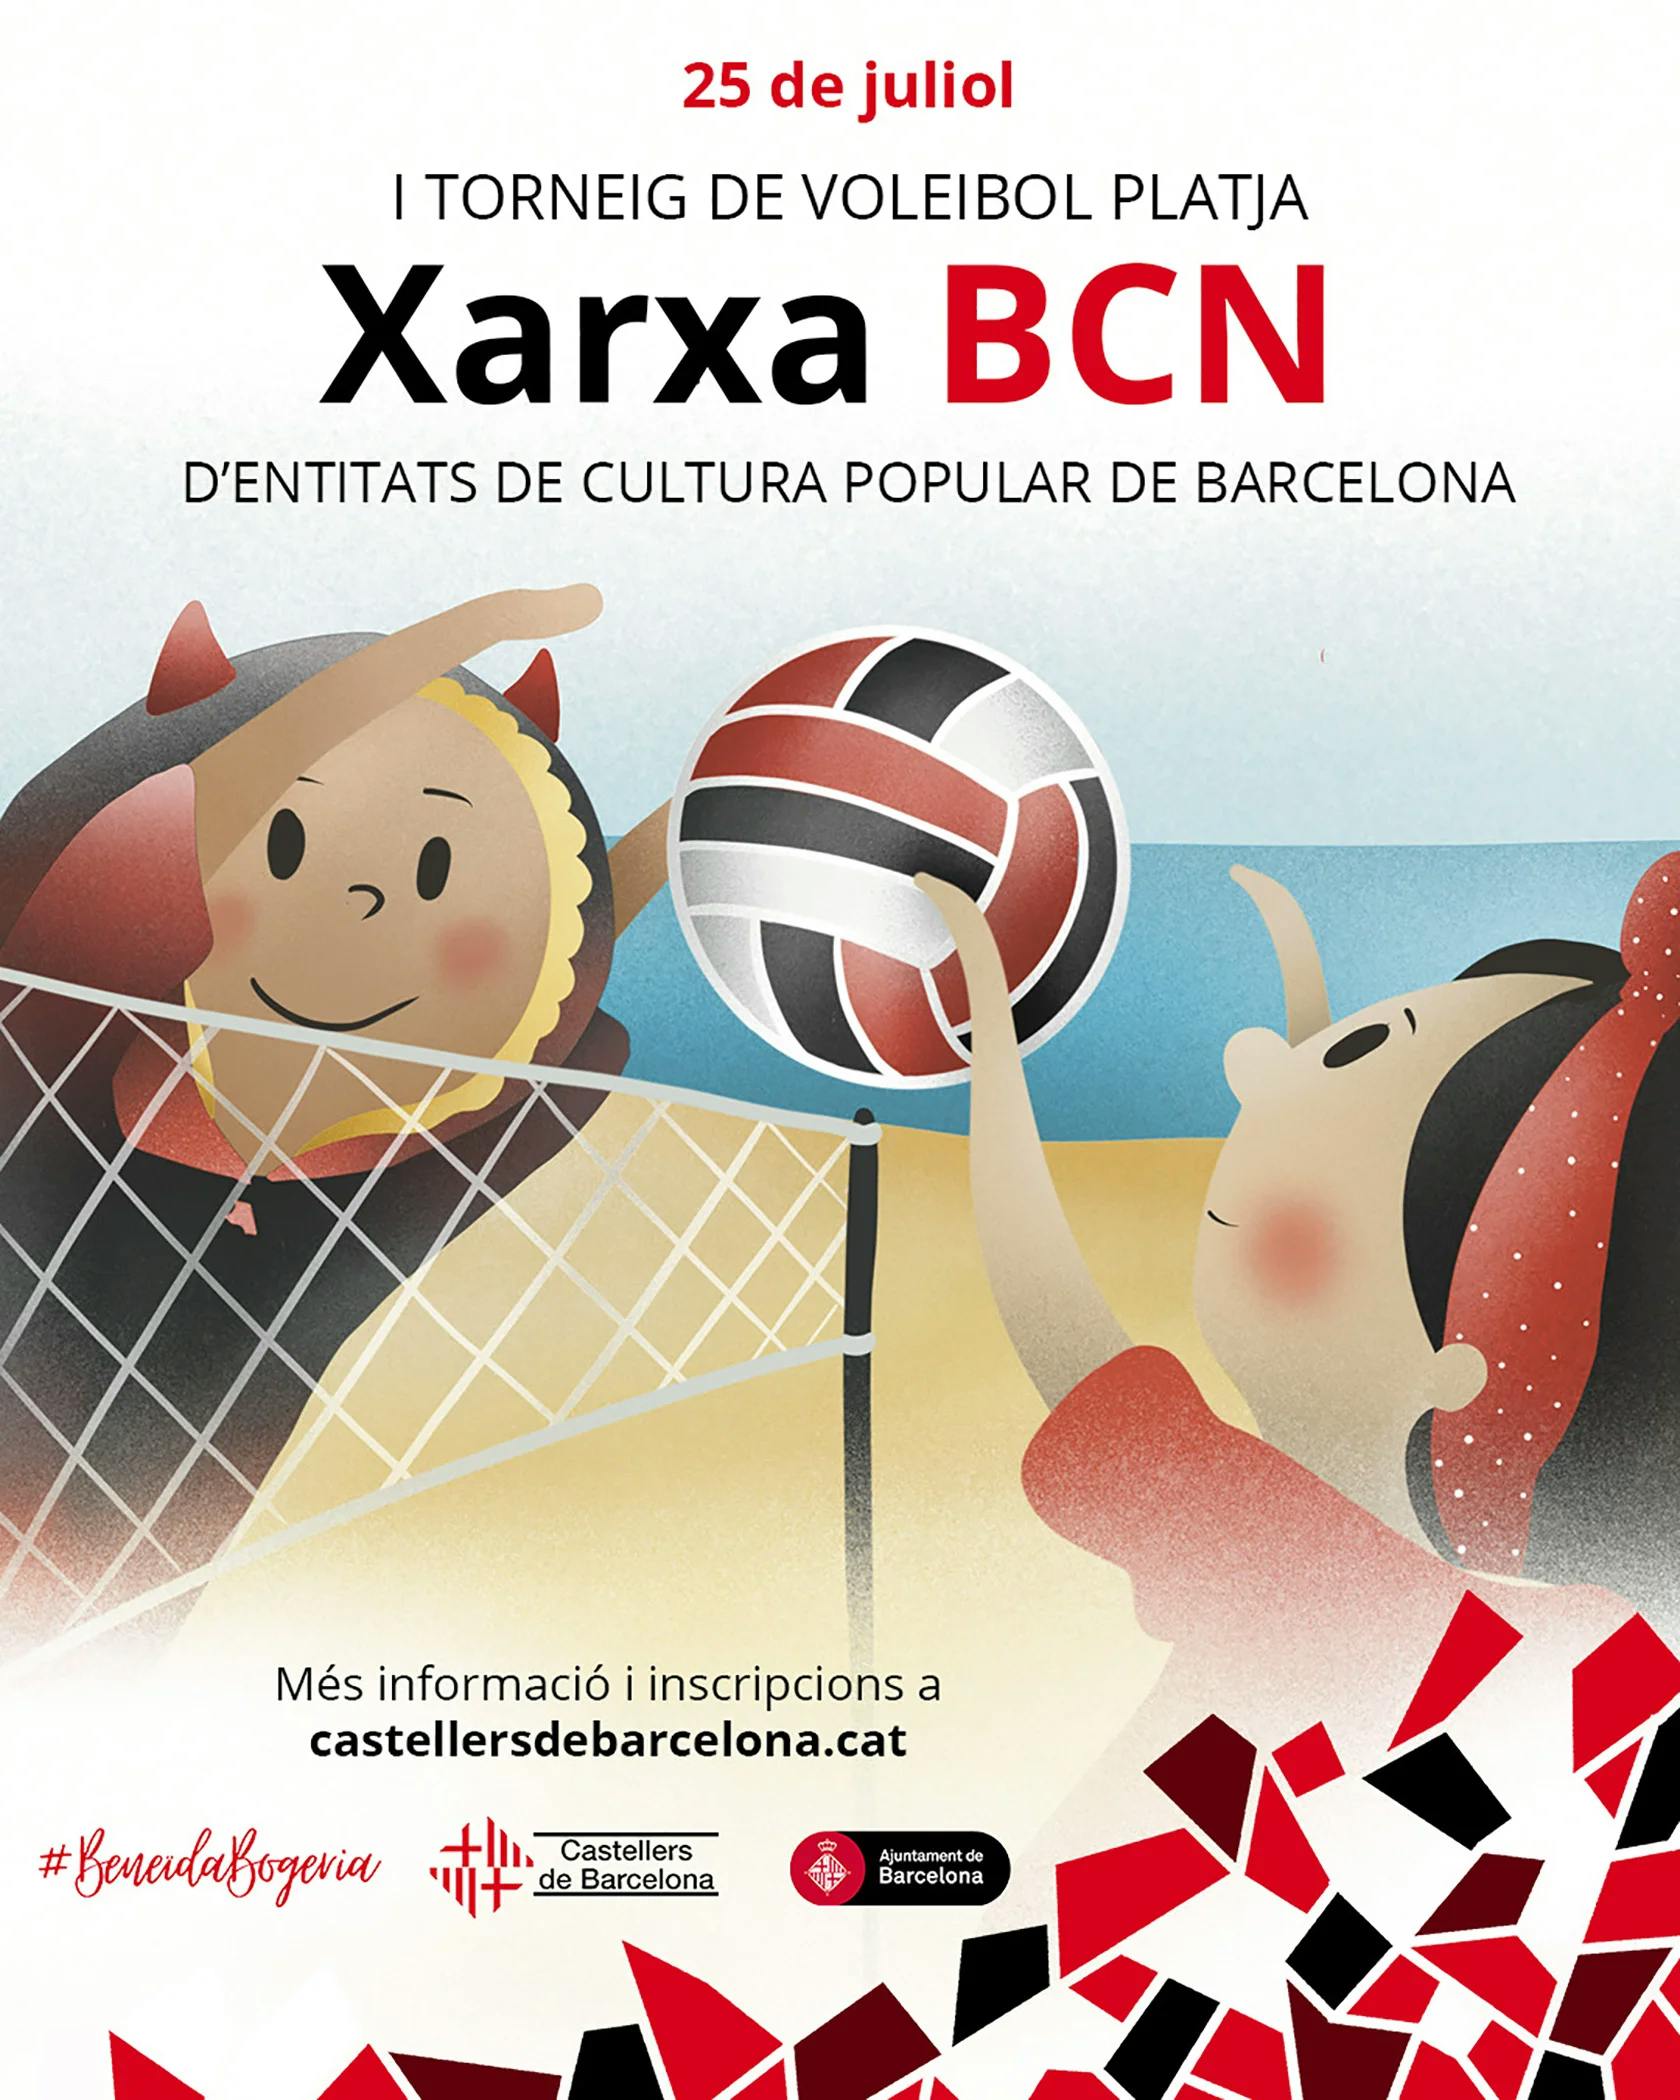 Arriba el XarxaBCN, el torneig de voleibol platja d&#8217;entitats de cultura popular de la ciutat